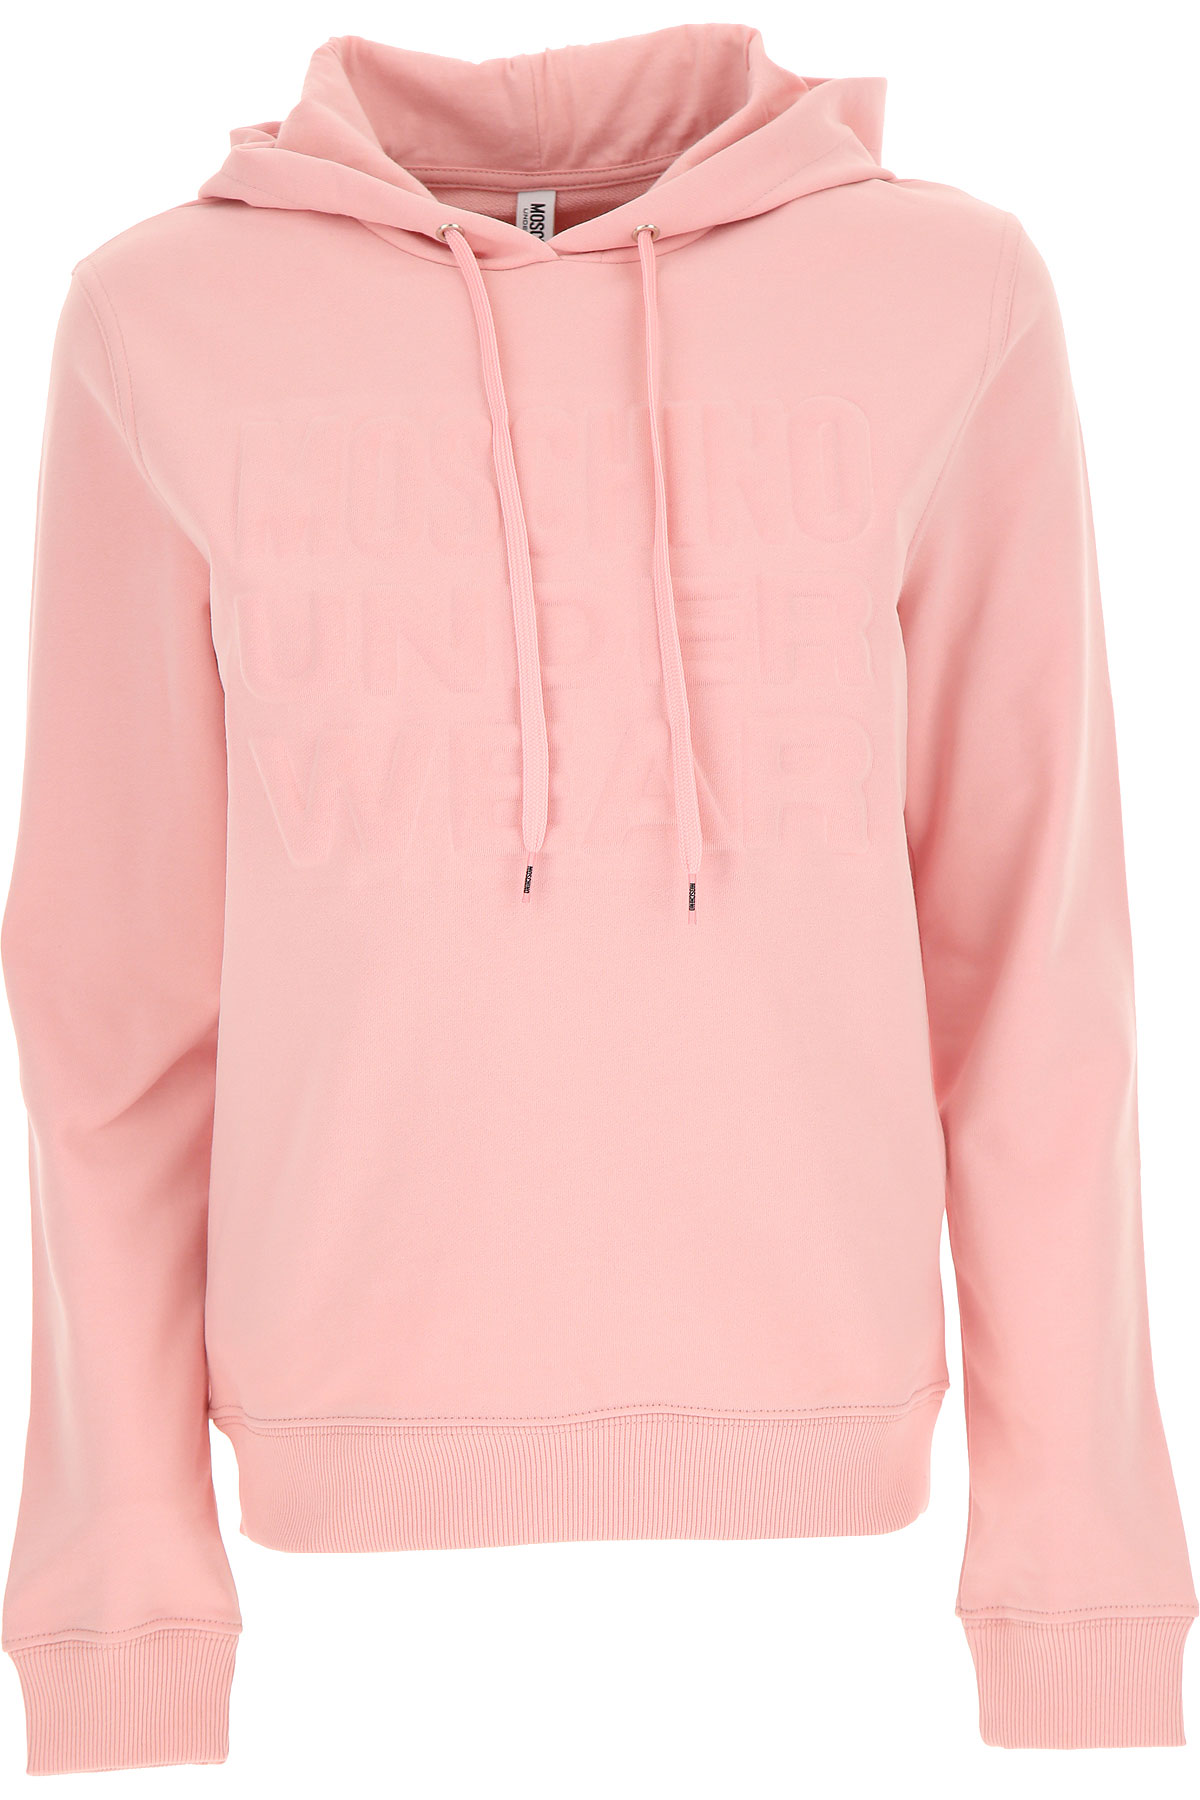 Moschino Sweatshirt für Damen, Kapuzenpulli, Hoodie, Sweats Günstig im Outlet Sale, Pink, Baumwolle, 2017, 40 44 M